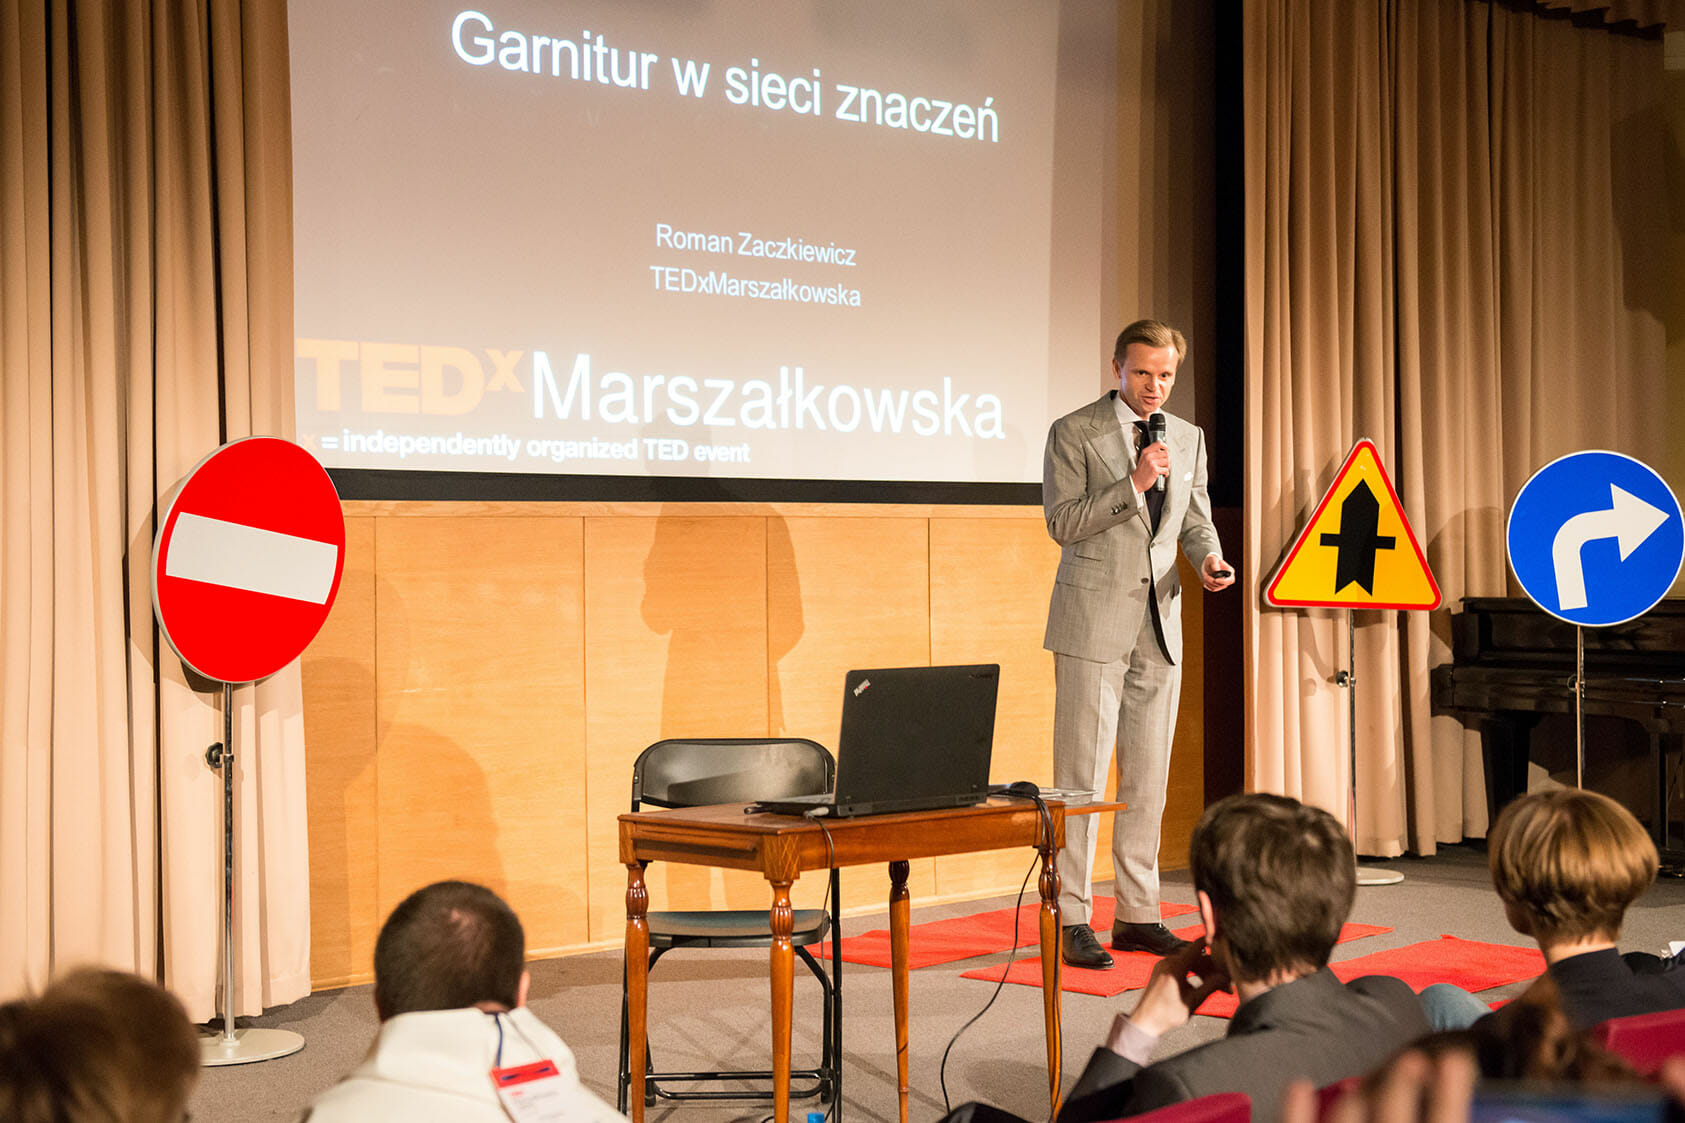 Garnitur w sieci znaczeń Tedx Marszałkowska